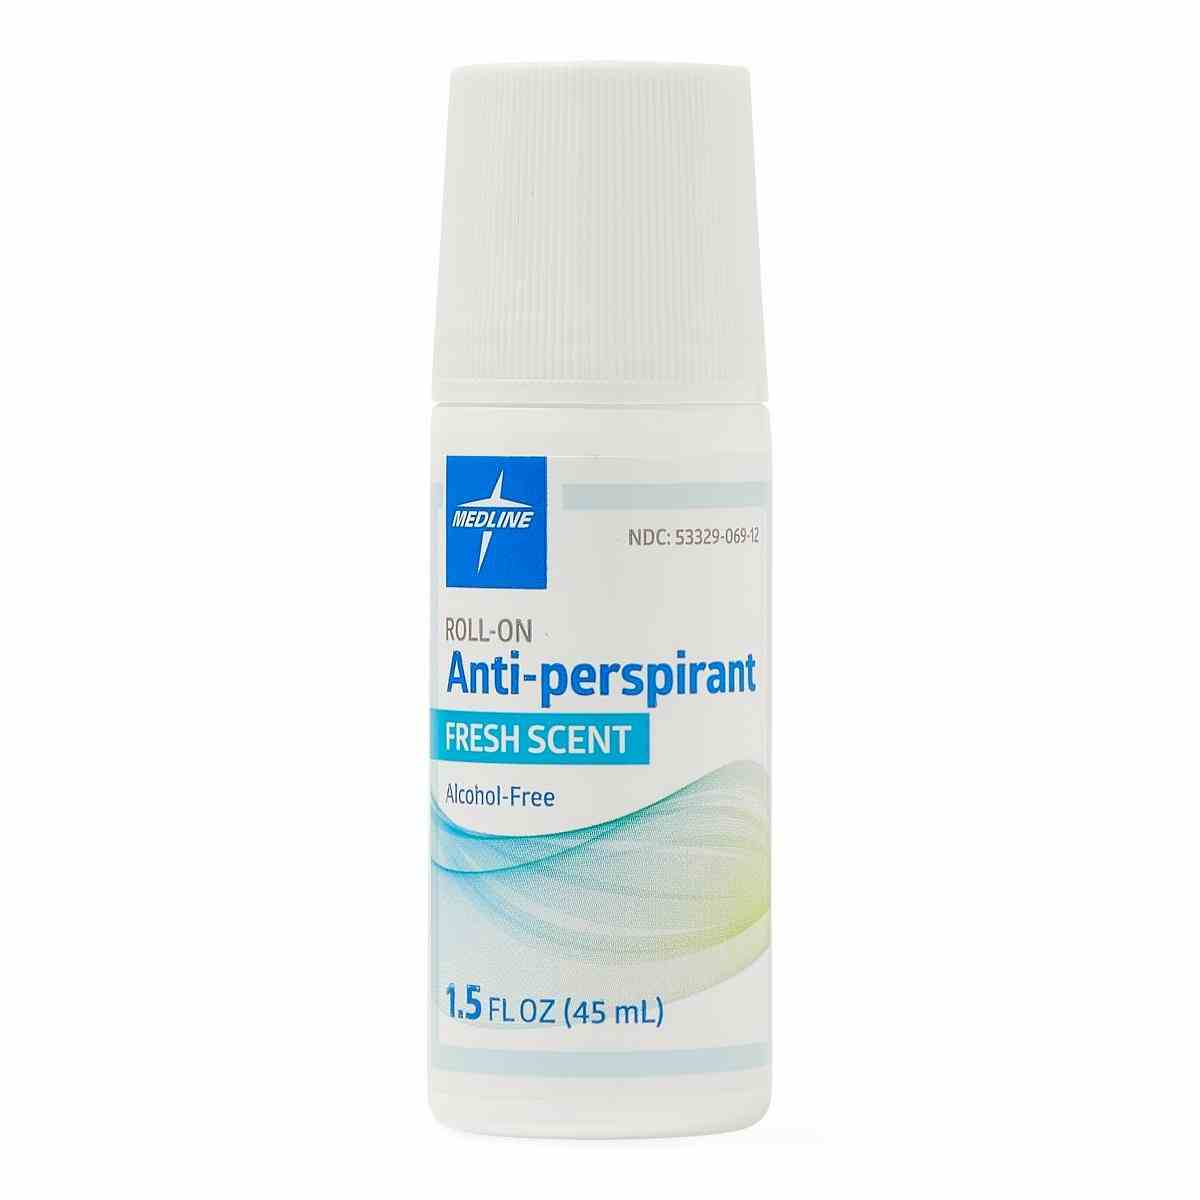 Medline MedSpa Roll-On Antiperspirant Deodorant, Fresh Scent, MSC095010, Case of 96